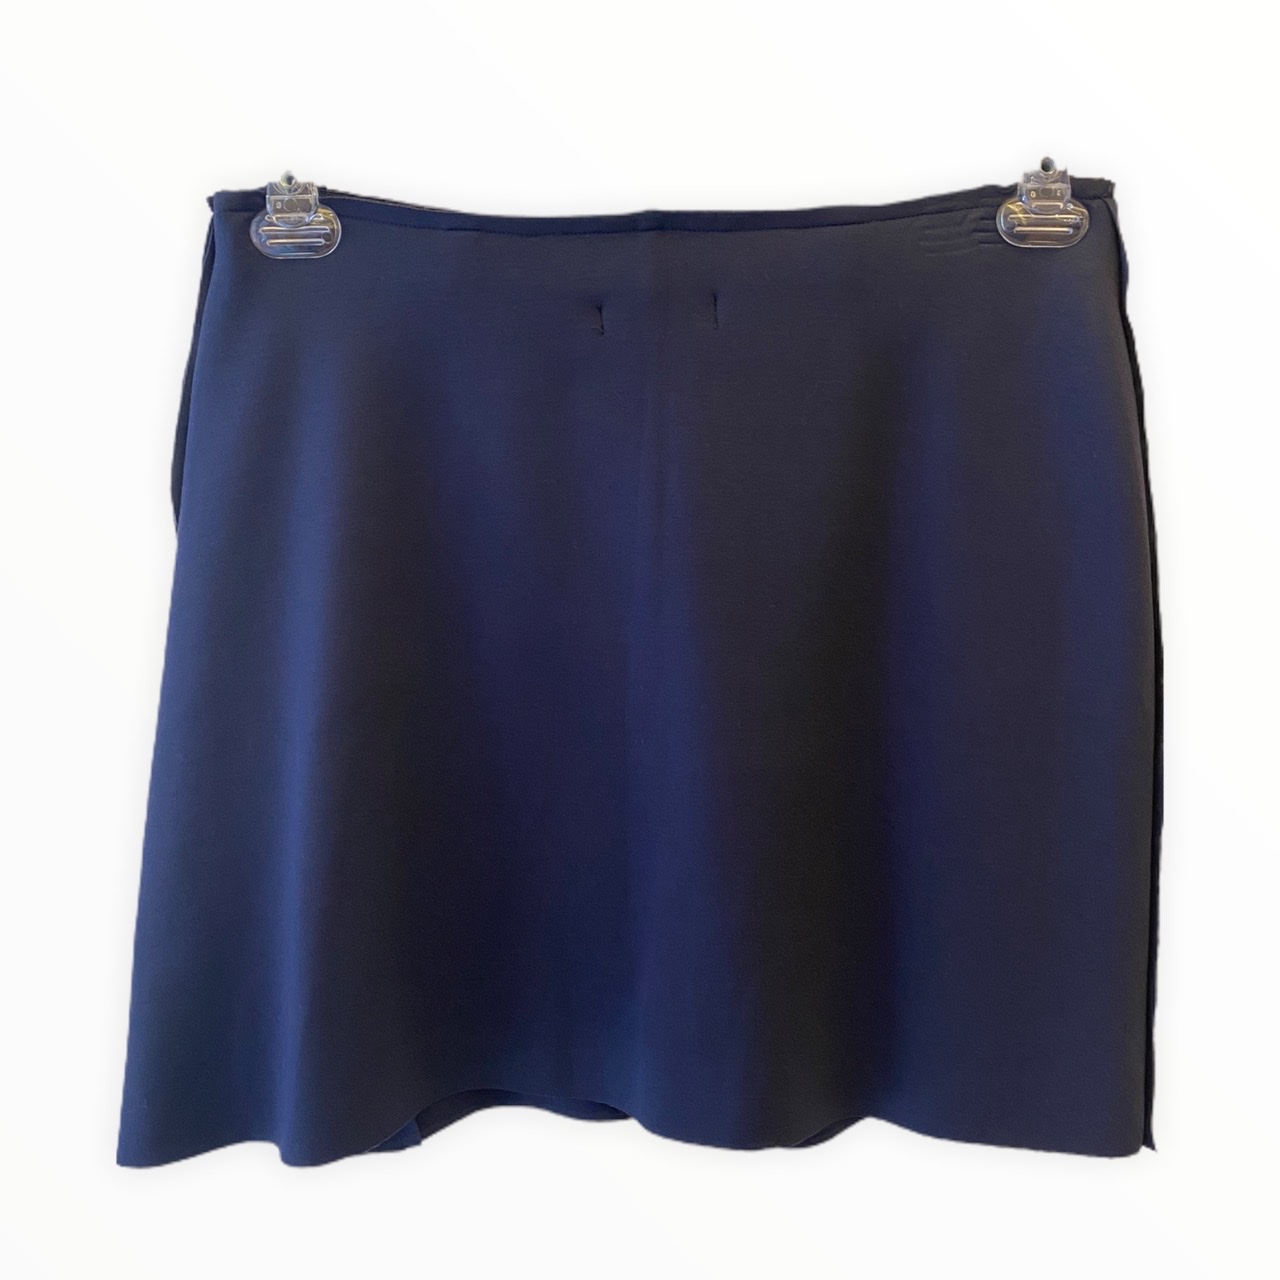 Saia-shorts em neoprene azul marinho com botões metal